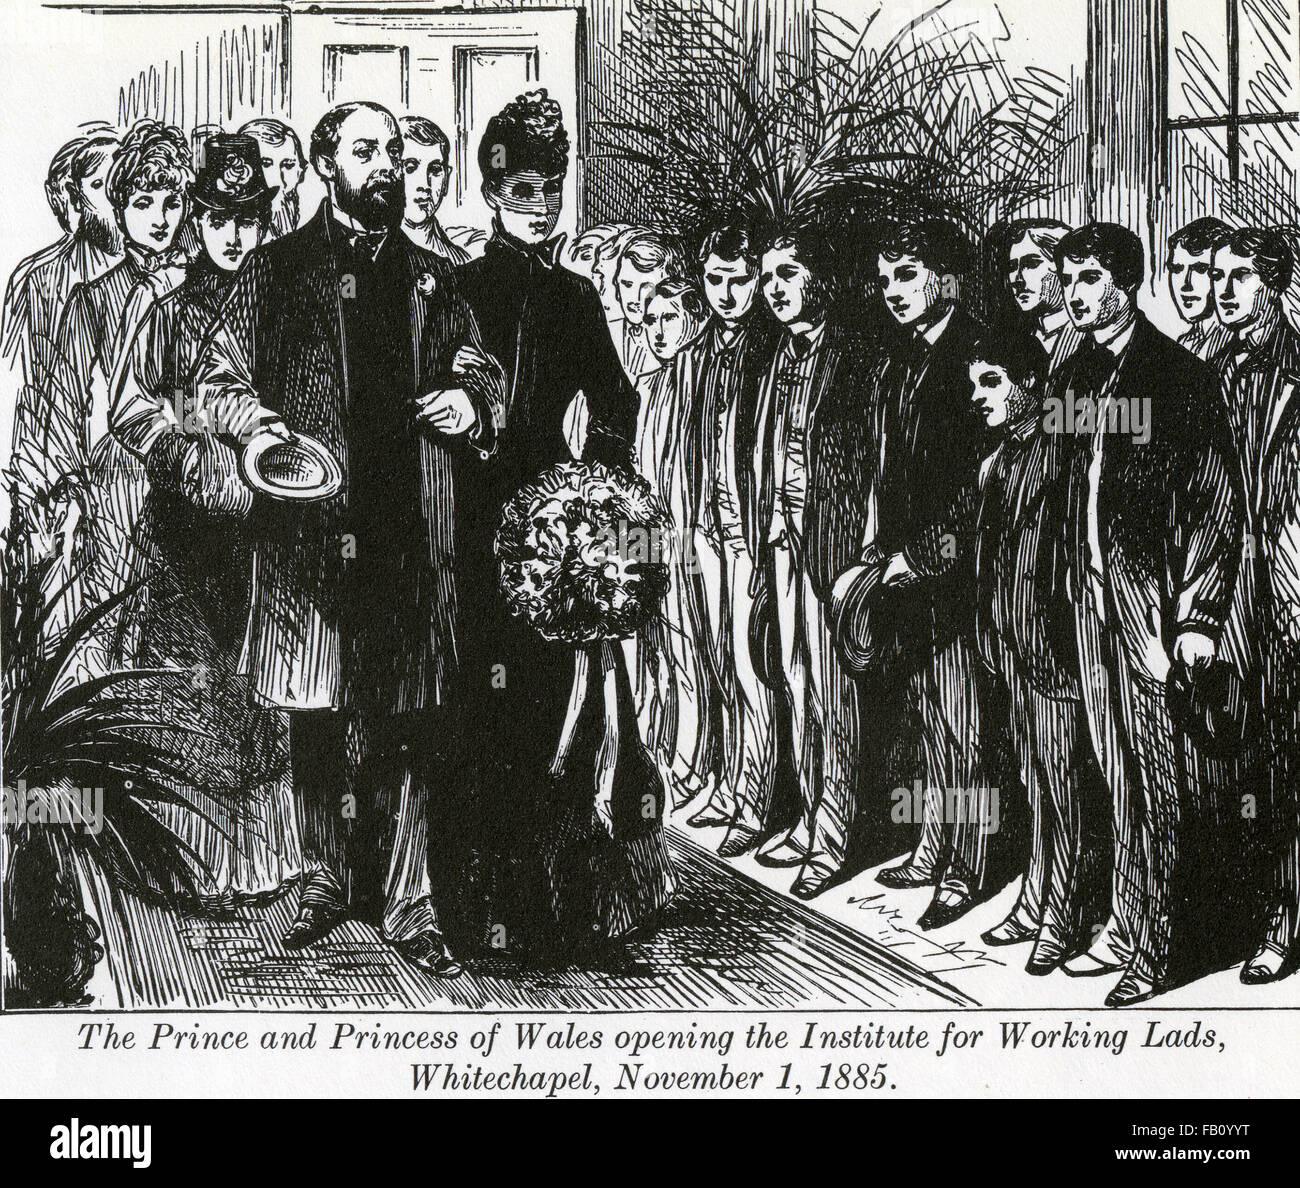 La pauvreté de l'époque victorienne Le Prince et la princesse de Galles l'ouverture de l'Institute for Working Lads dans au 137 Whitechapel Road, Londres, le 1 novembre 1885 Banque D'Images